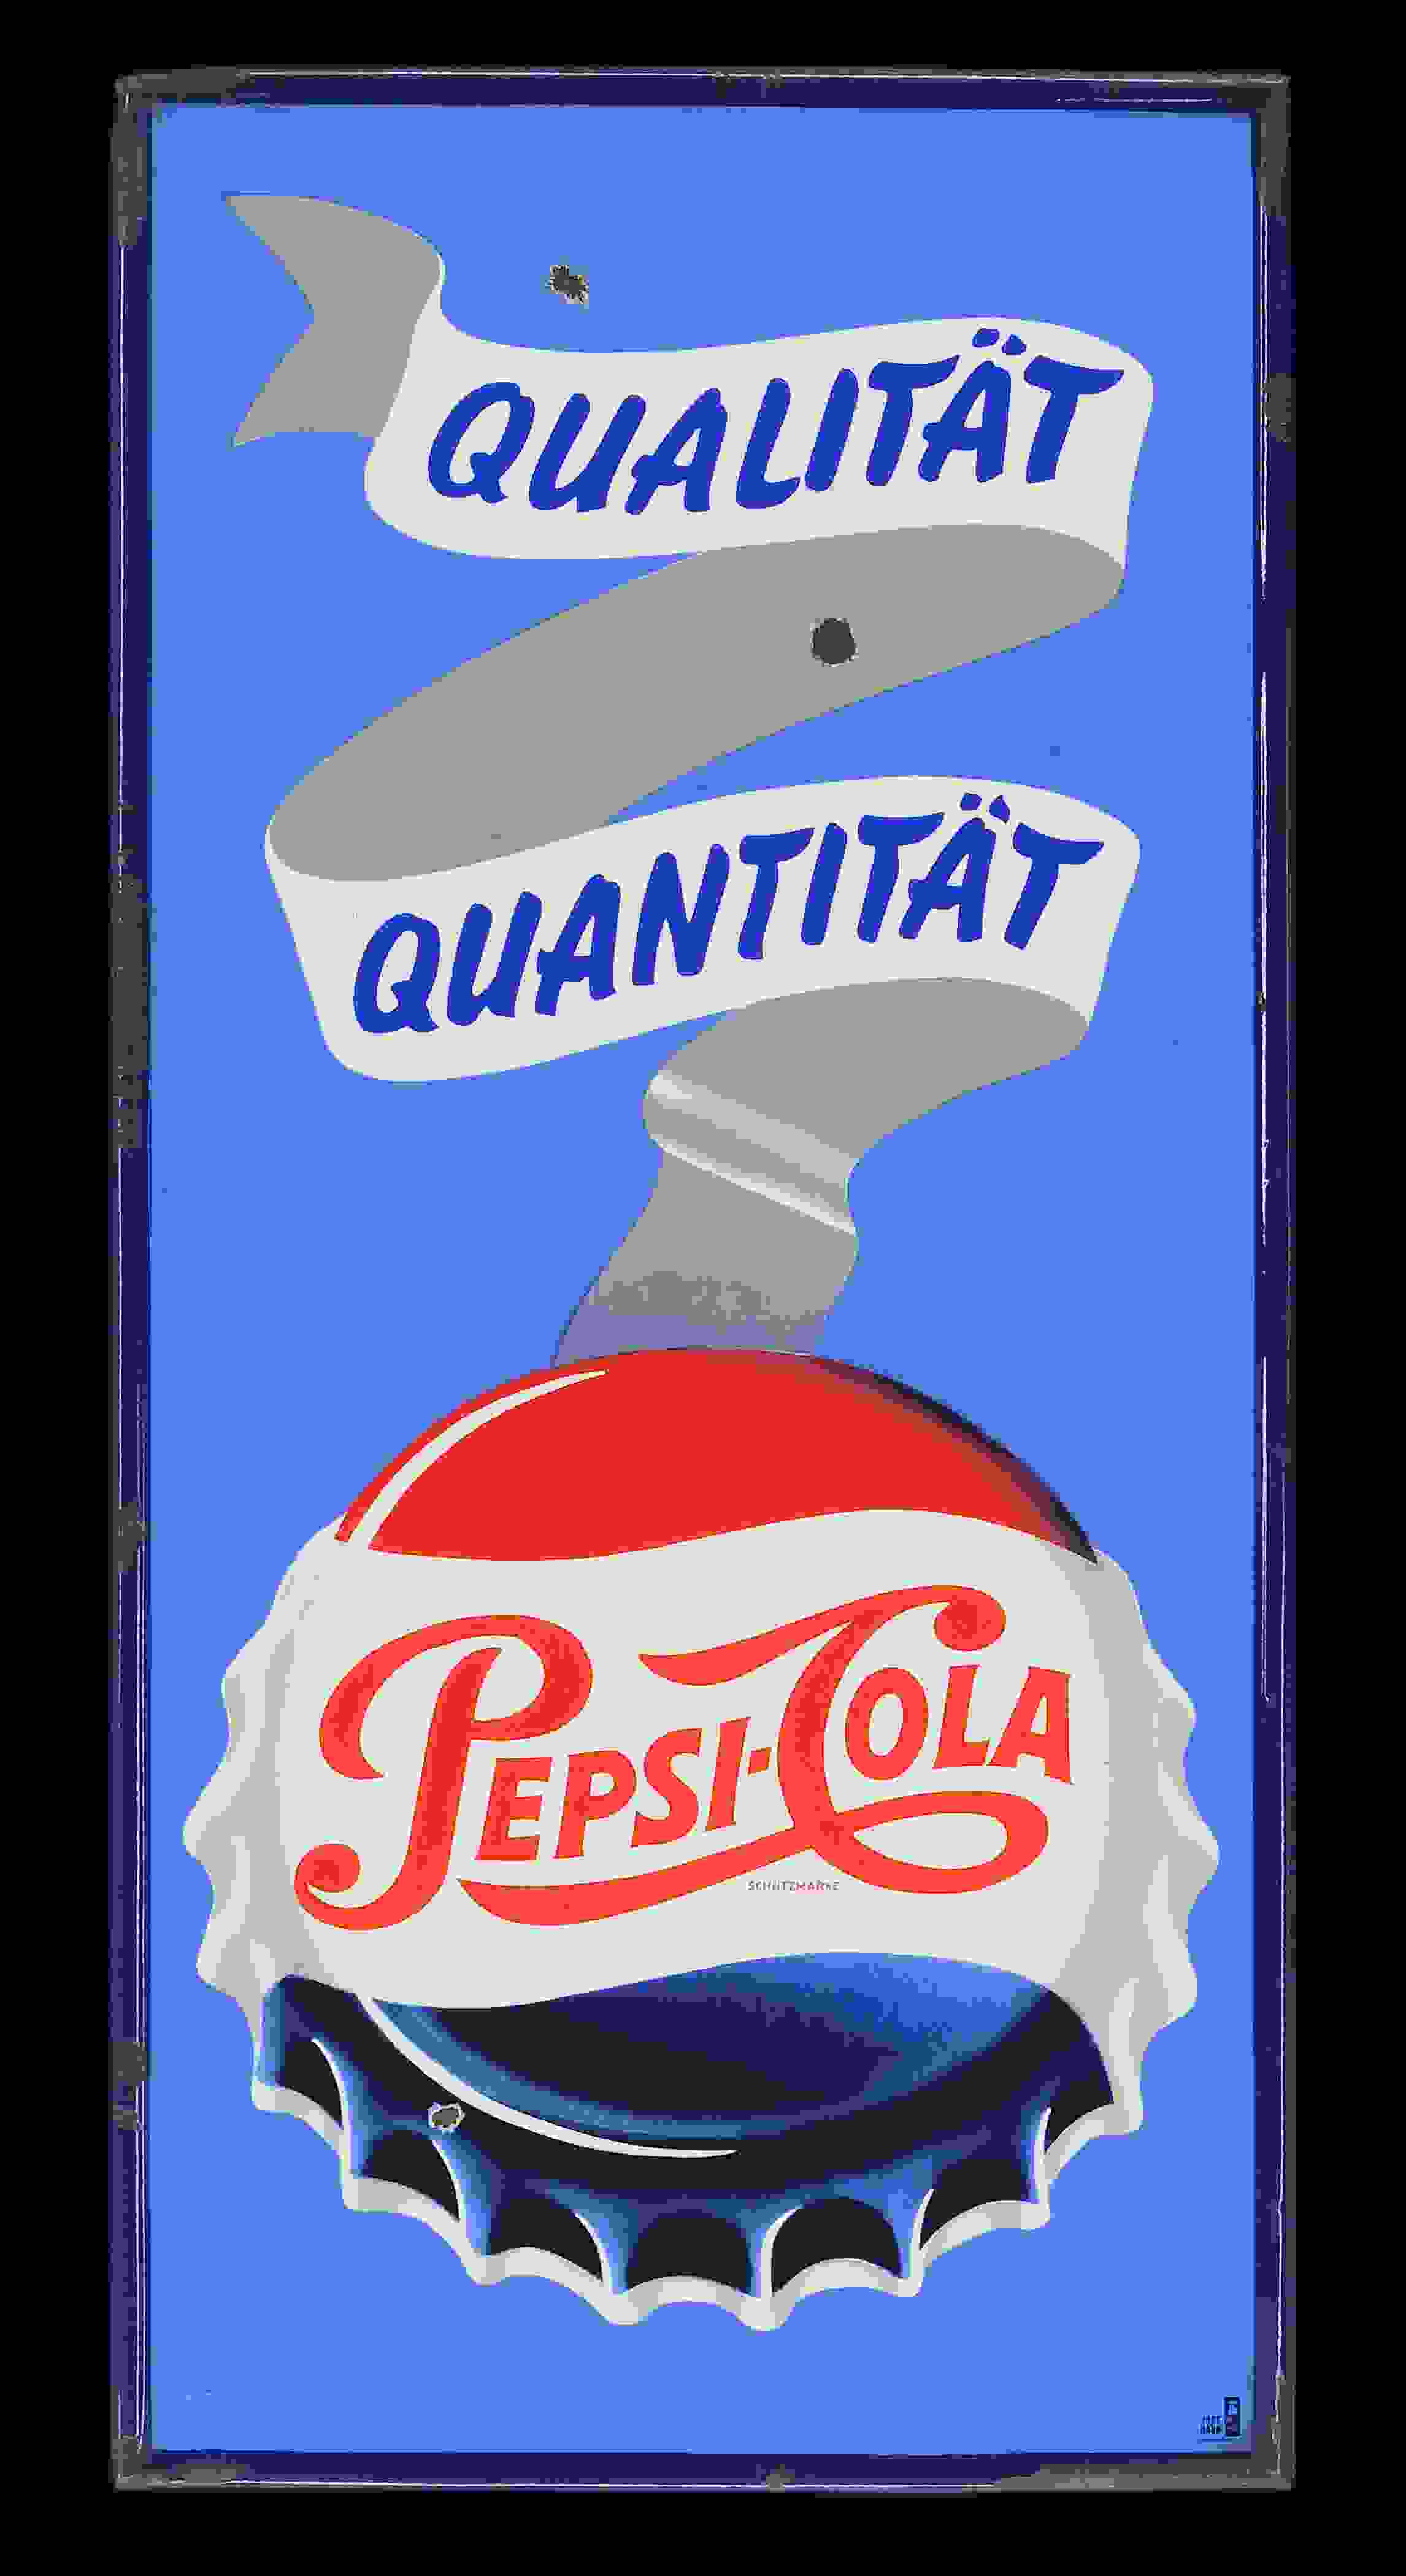 Pepsi Cola Qualität Quantität 